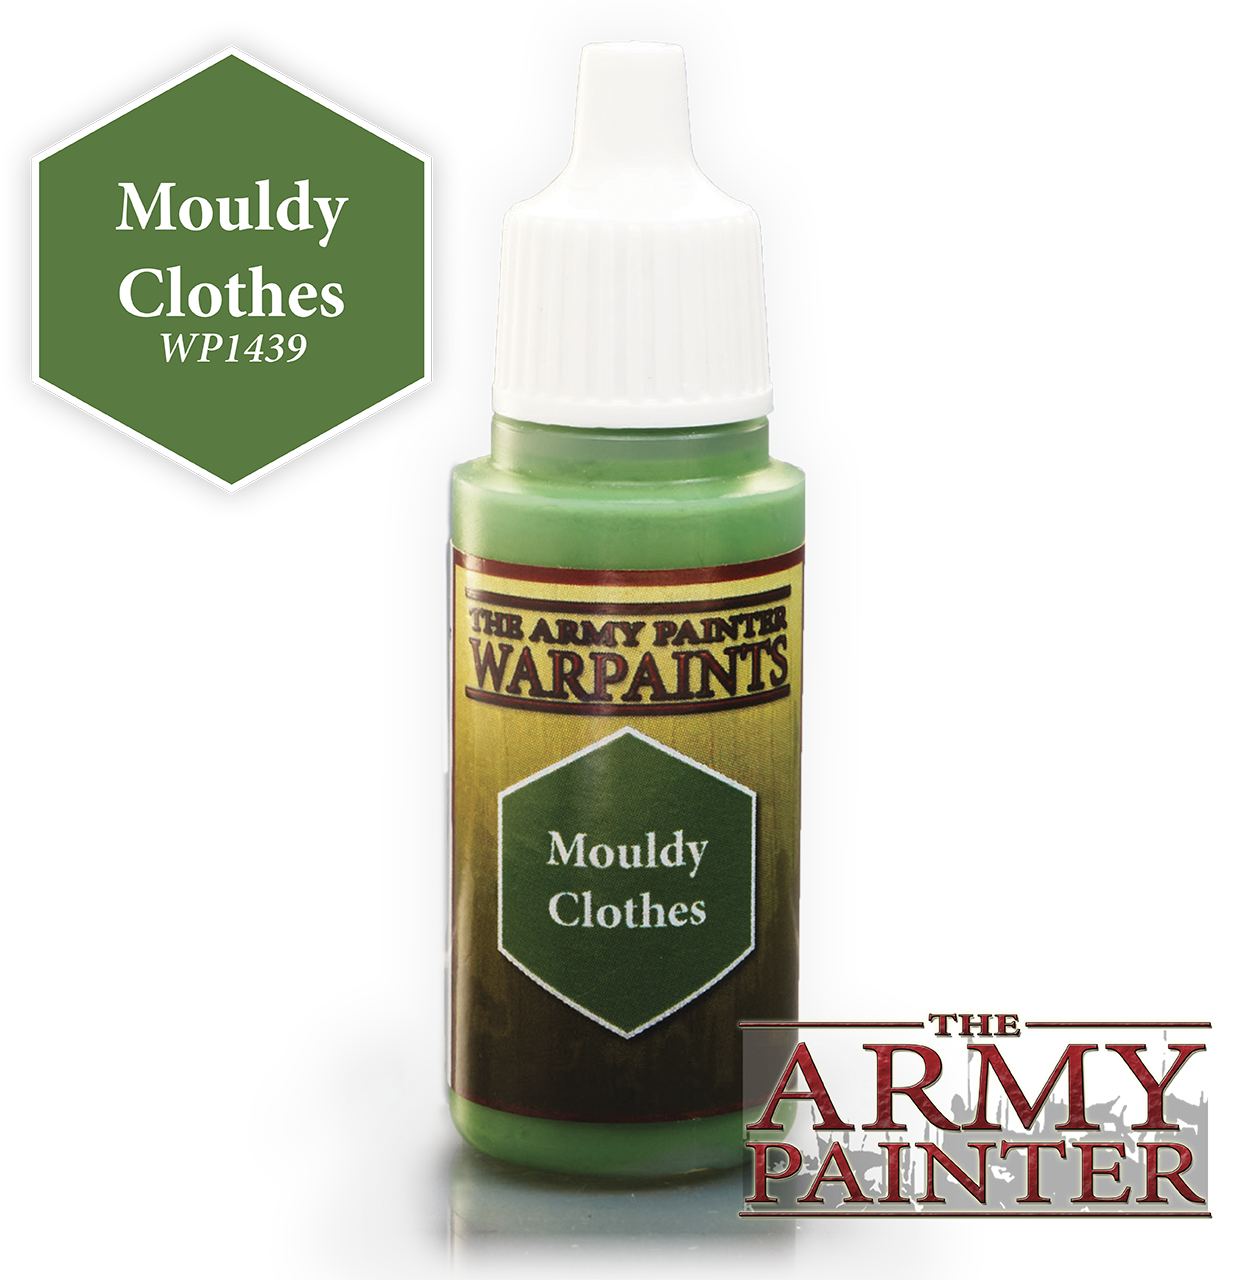 Mouldy Clothes - Army Painter Warpaints